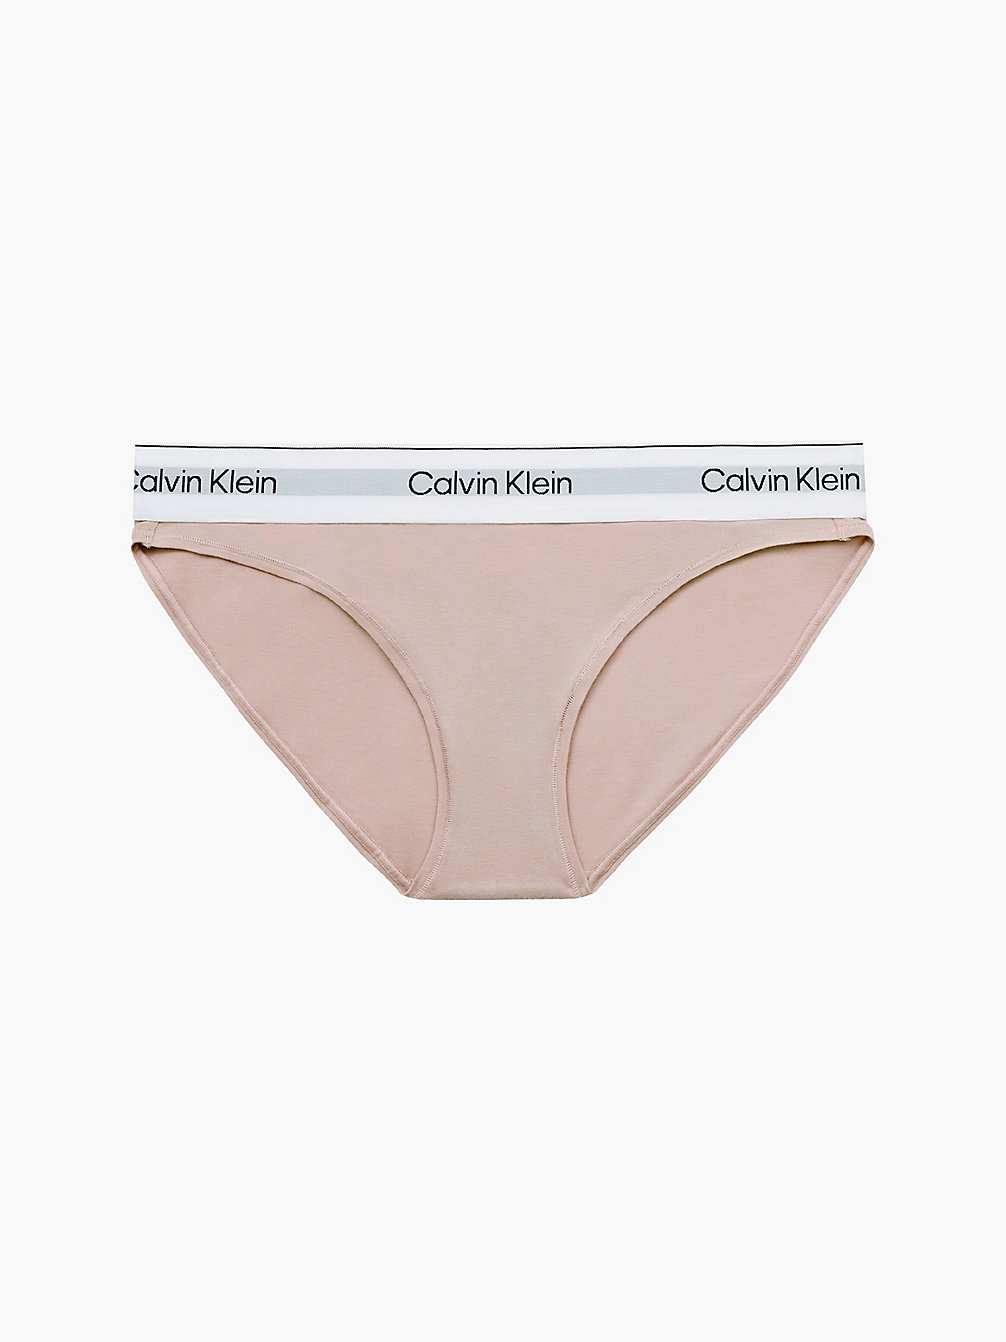 CEDAR Culotte - Modern Cotton undefined femmes Calvin Klein